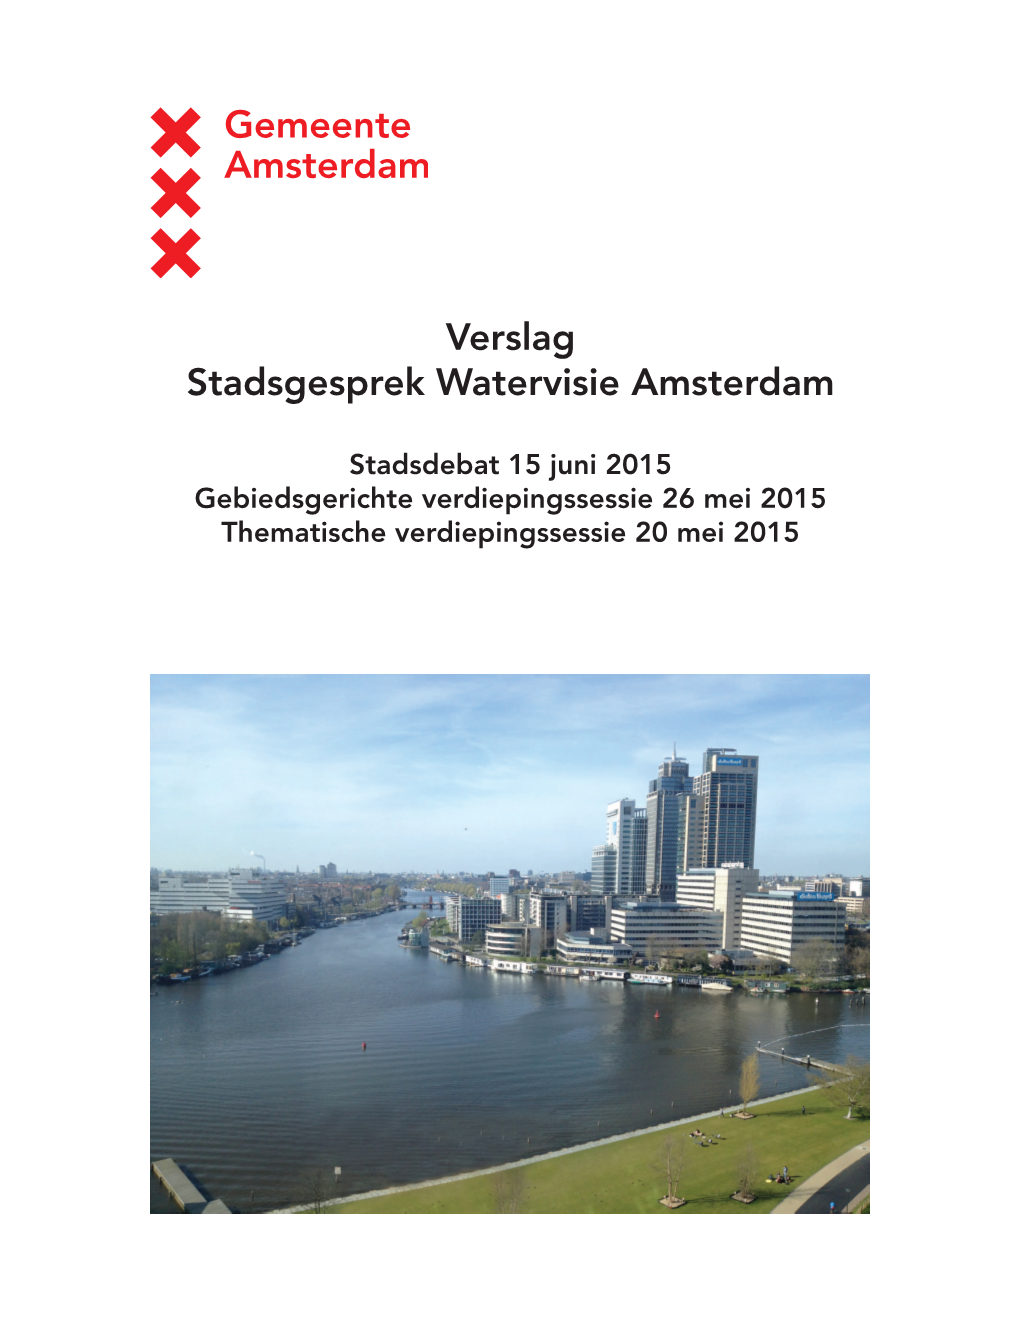 Stadsgesprek Watervisie Amsterdam 15 Juni 2015